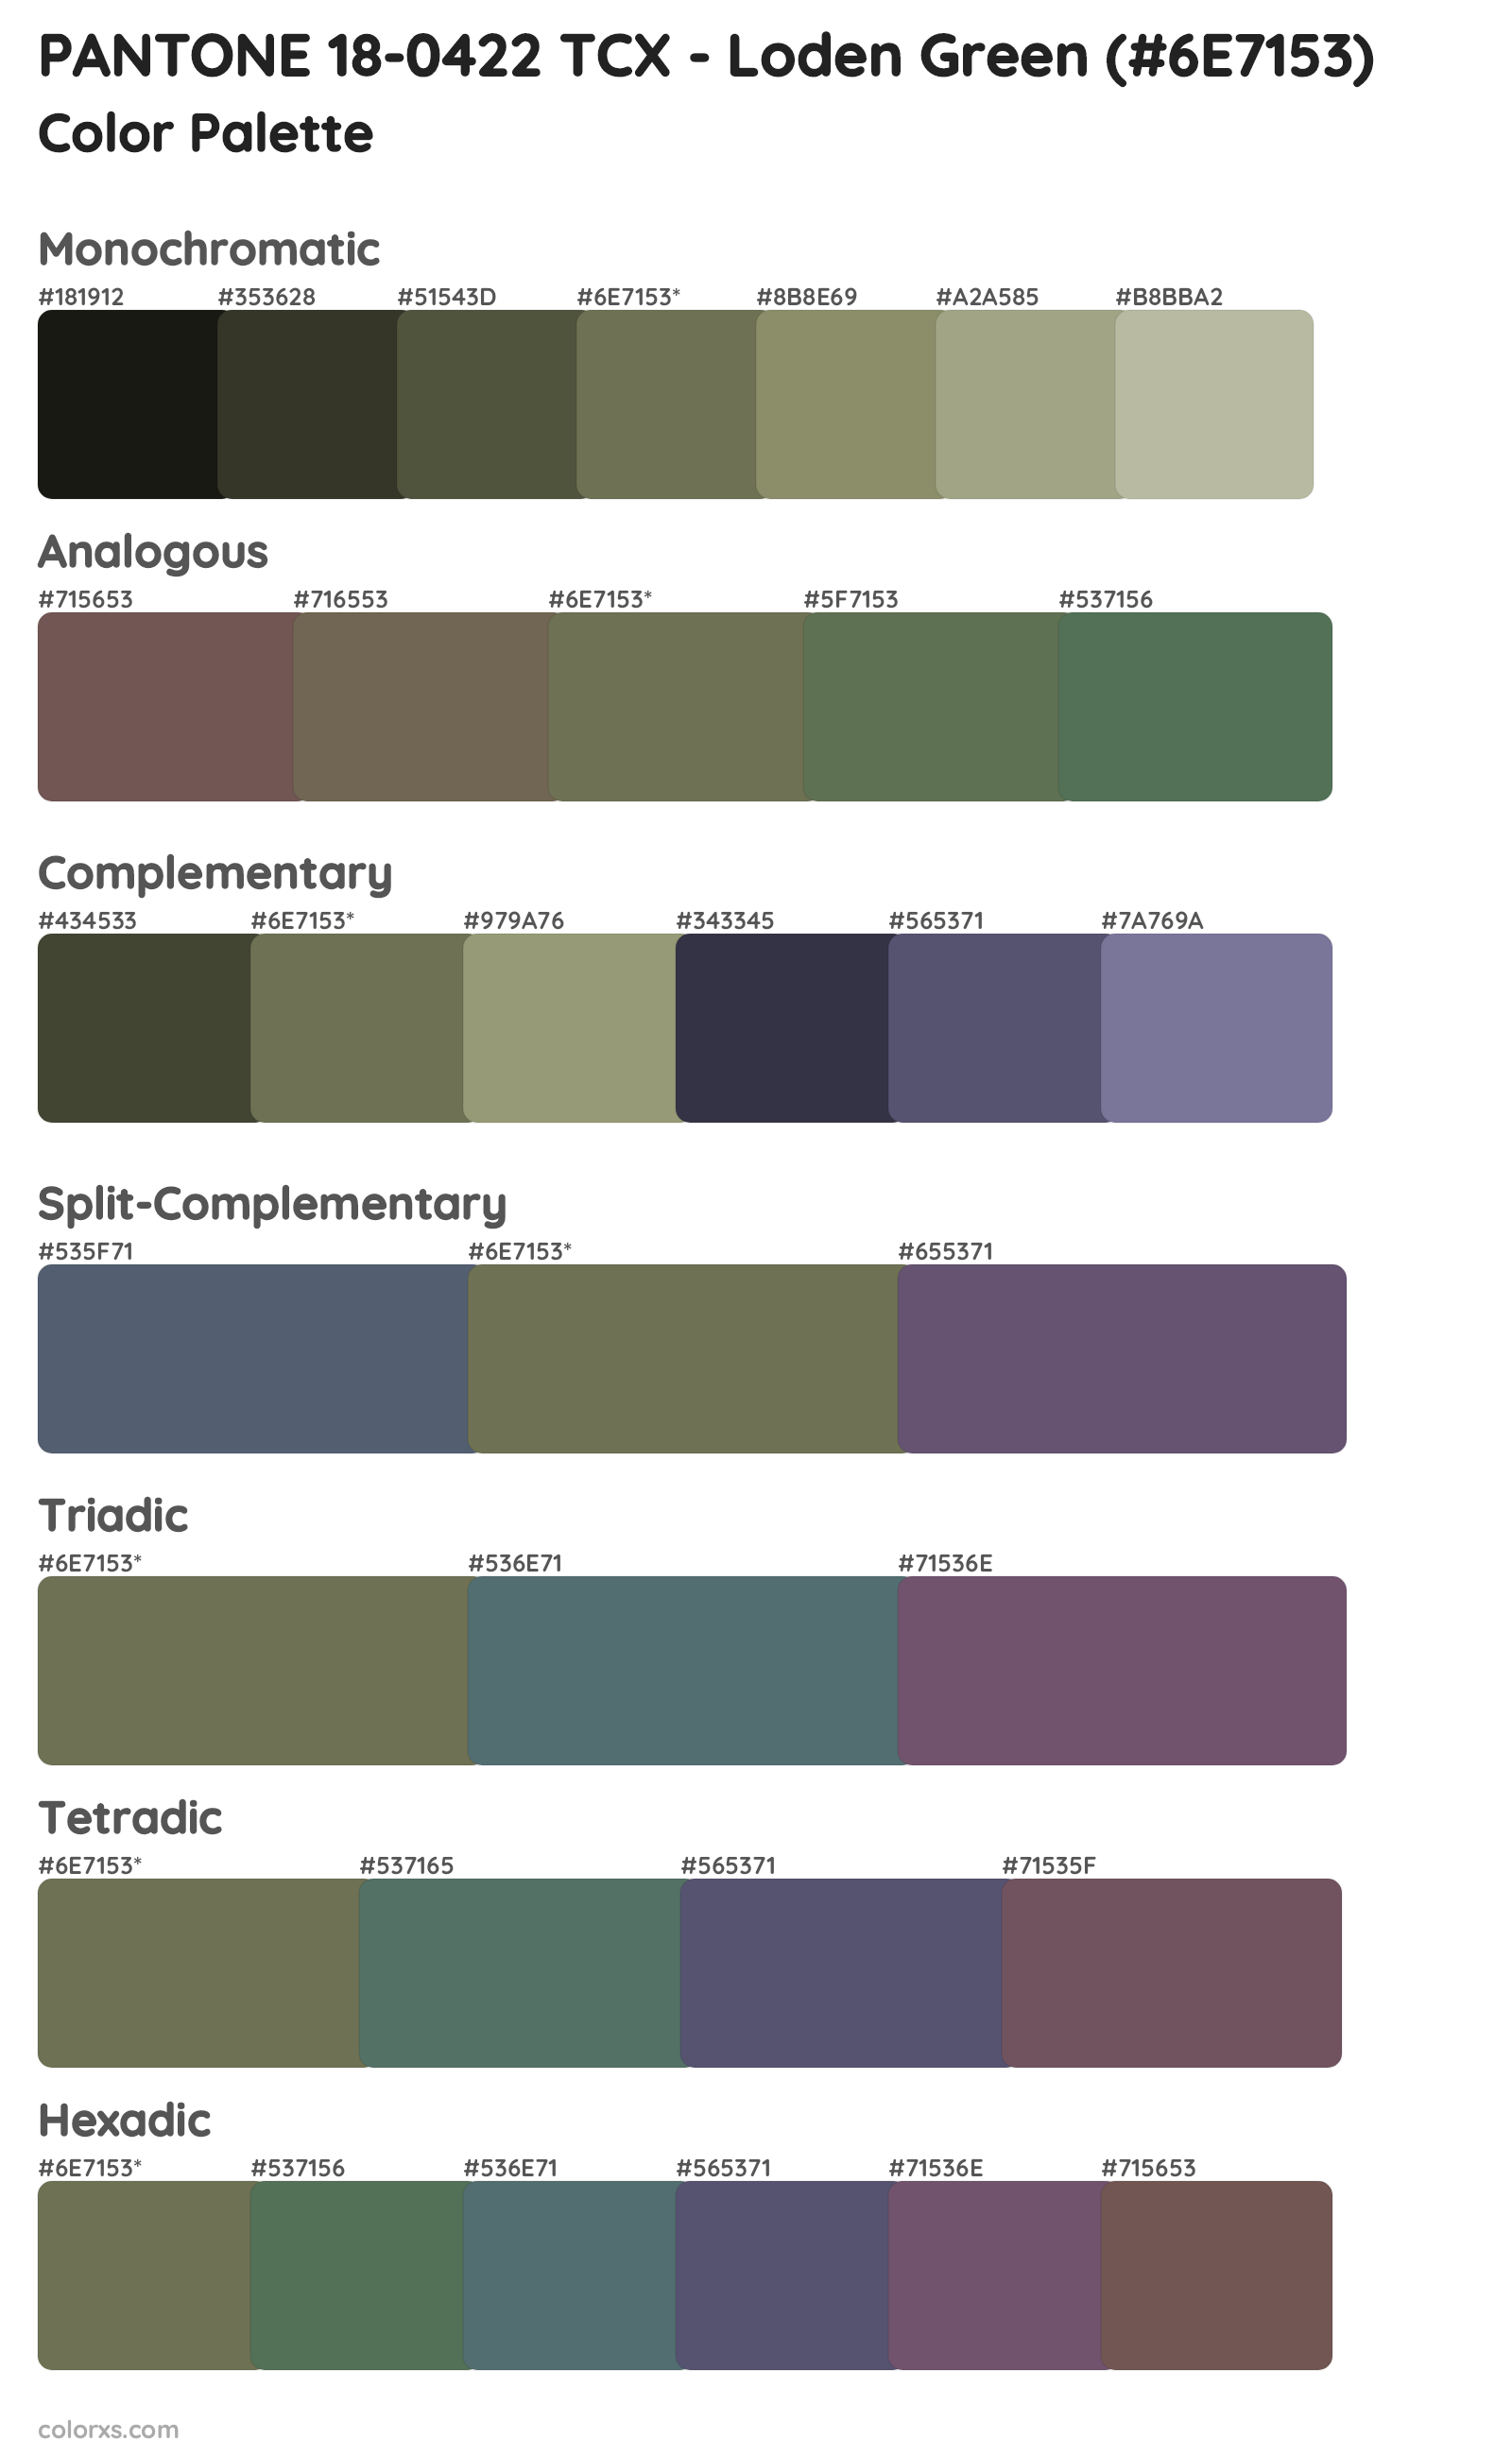 PANTONE 18-0422 TCX - Loden Green color palettes and color scheme ...